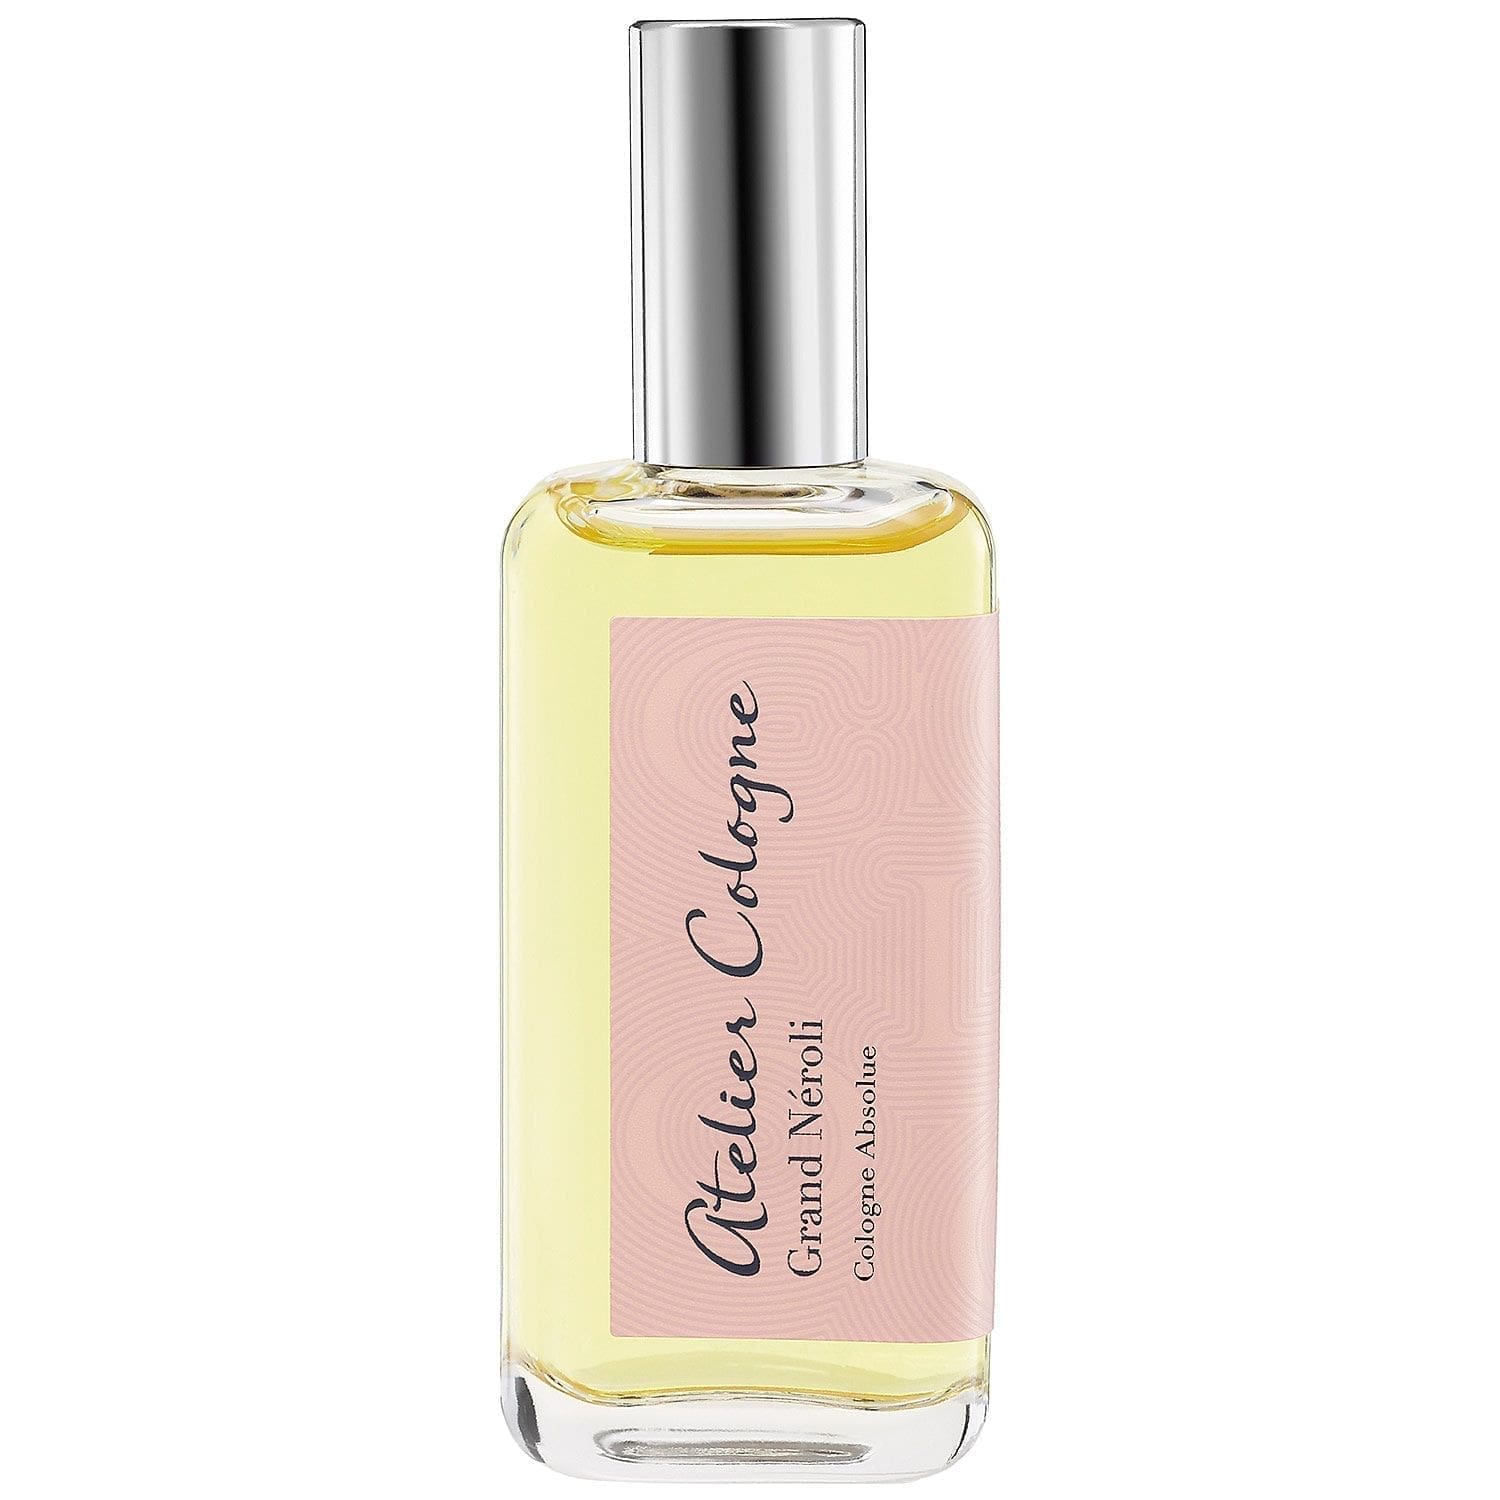 3027 Grand Neroli Atelier Cologne pure perfume 30 ml